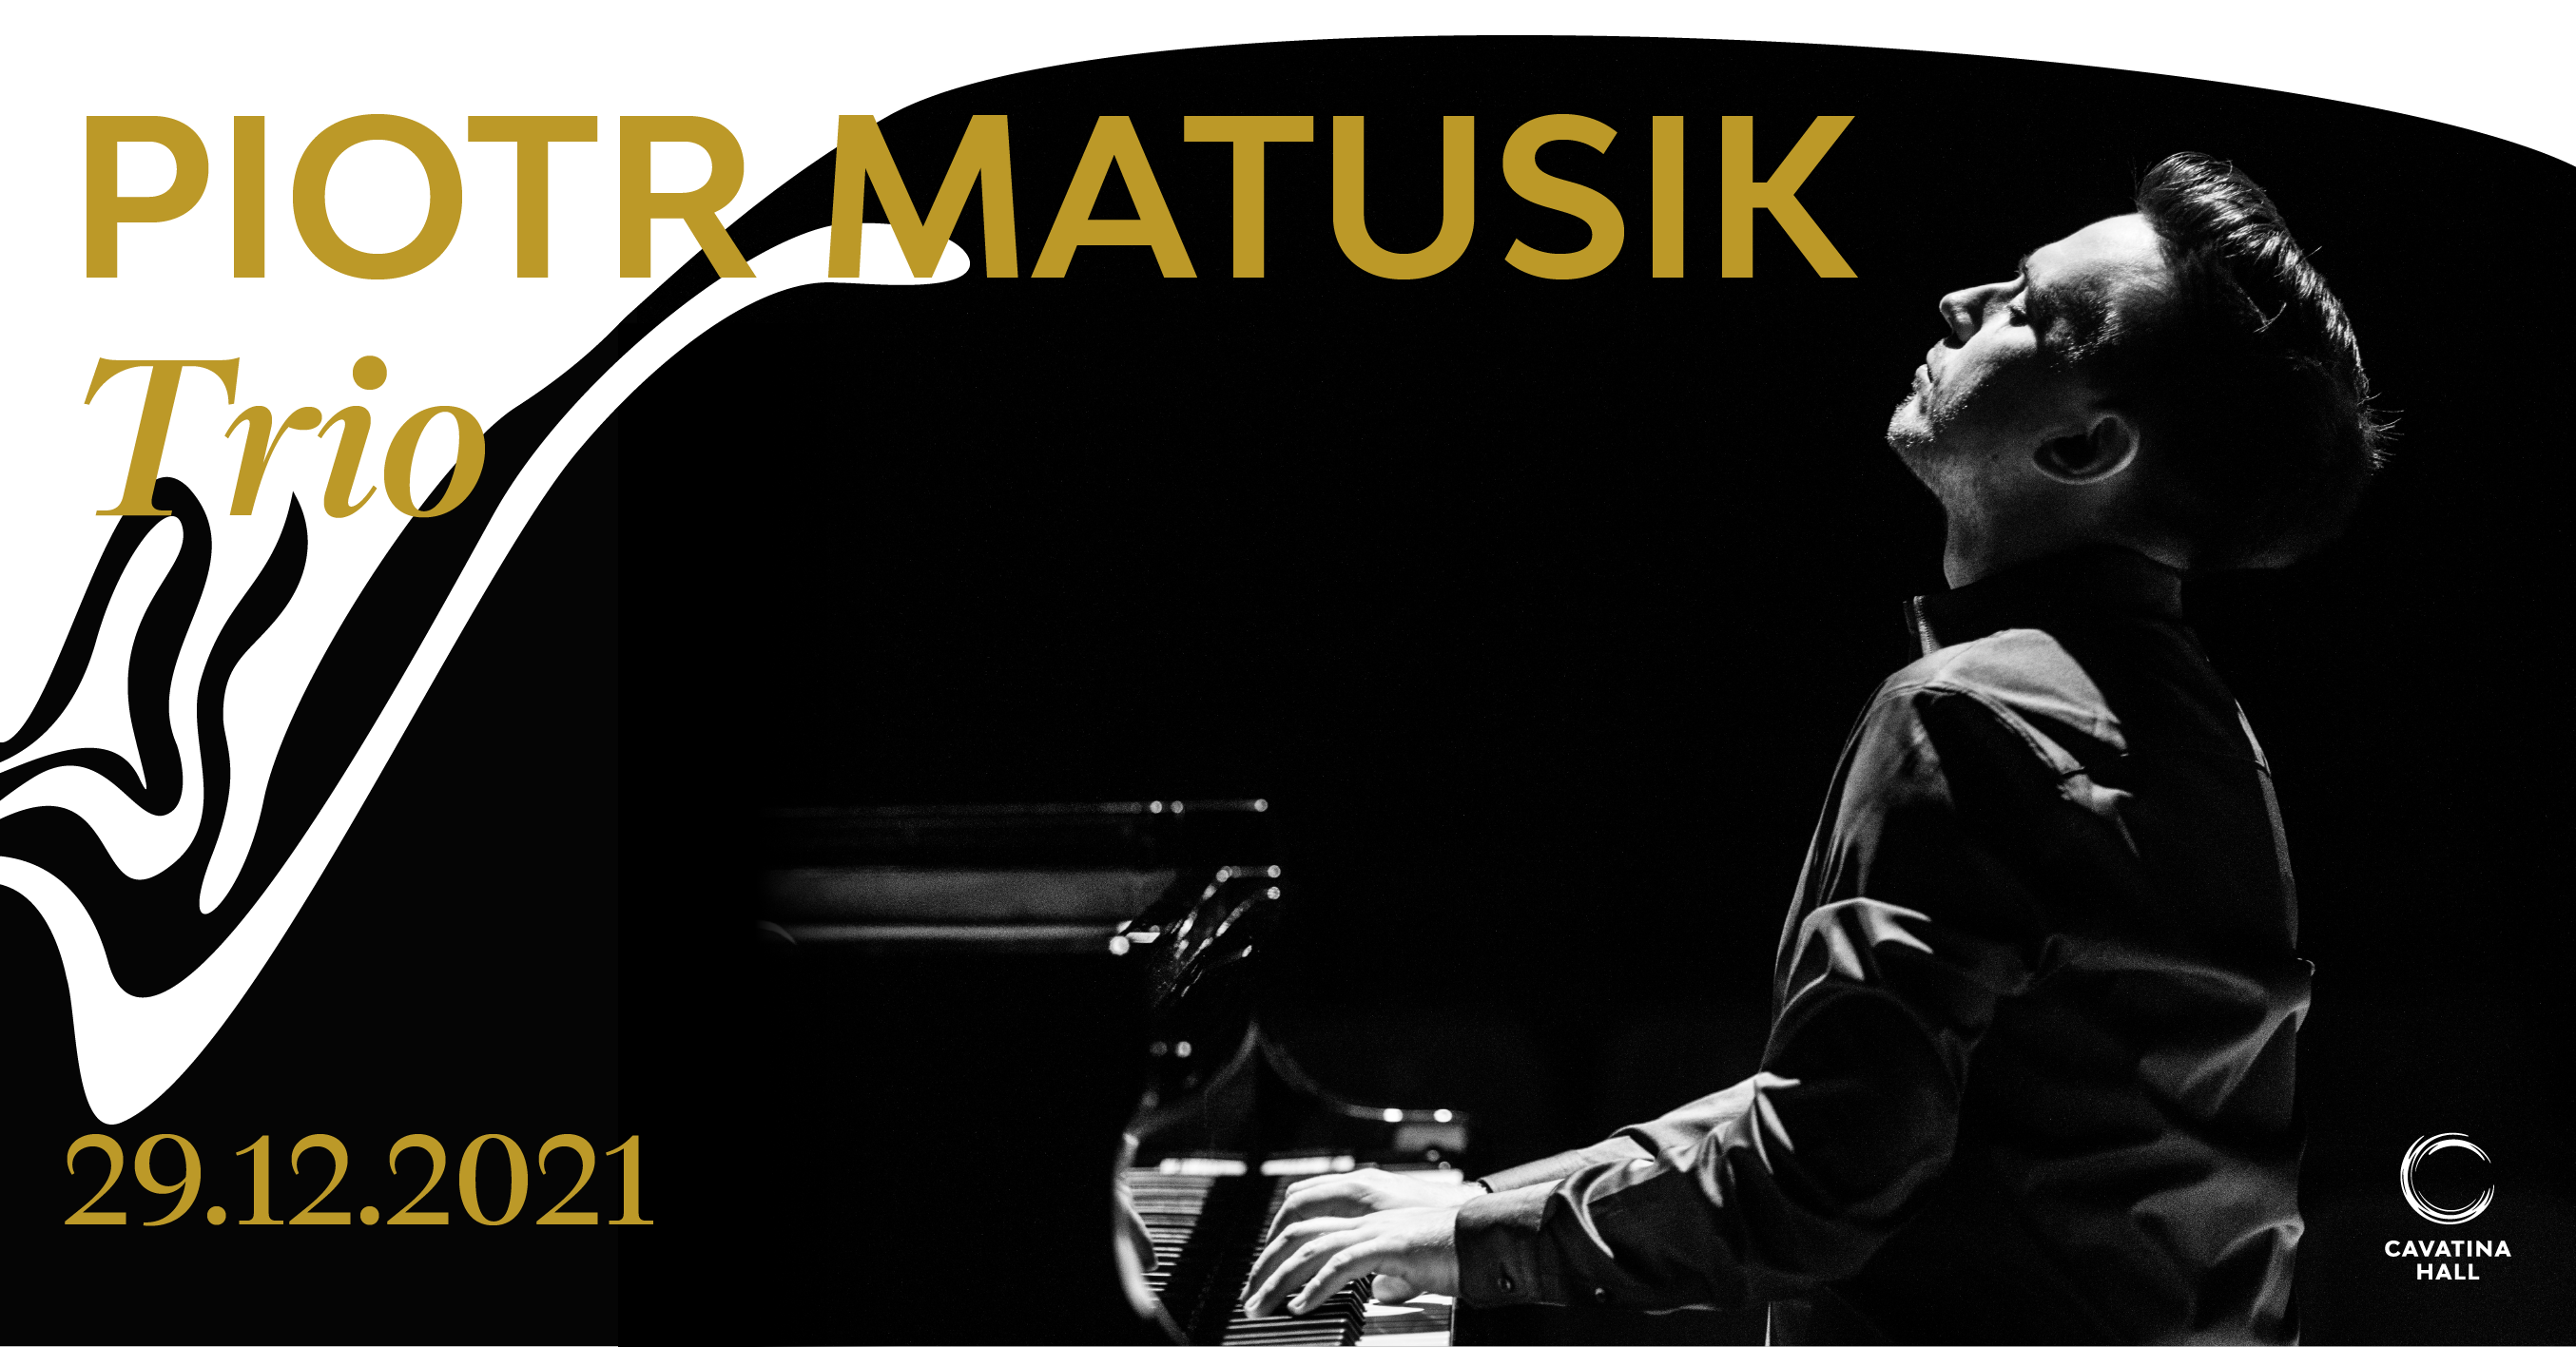  Piotr Matusik Trio - koncert przeniesiony na inny termin Na zdjęciu plakat koncertu